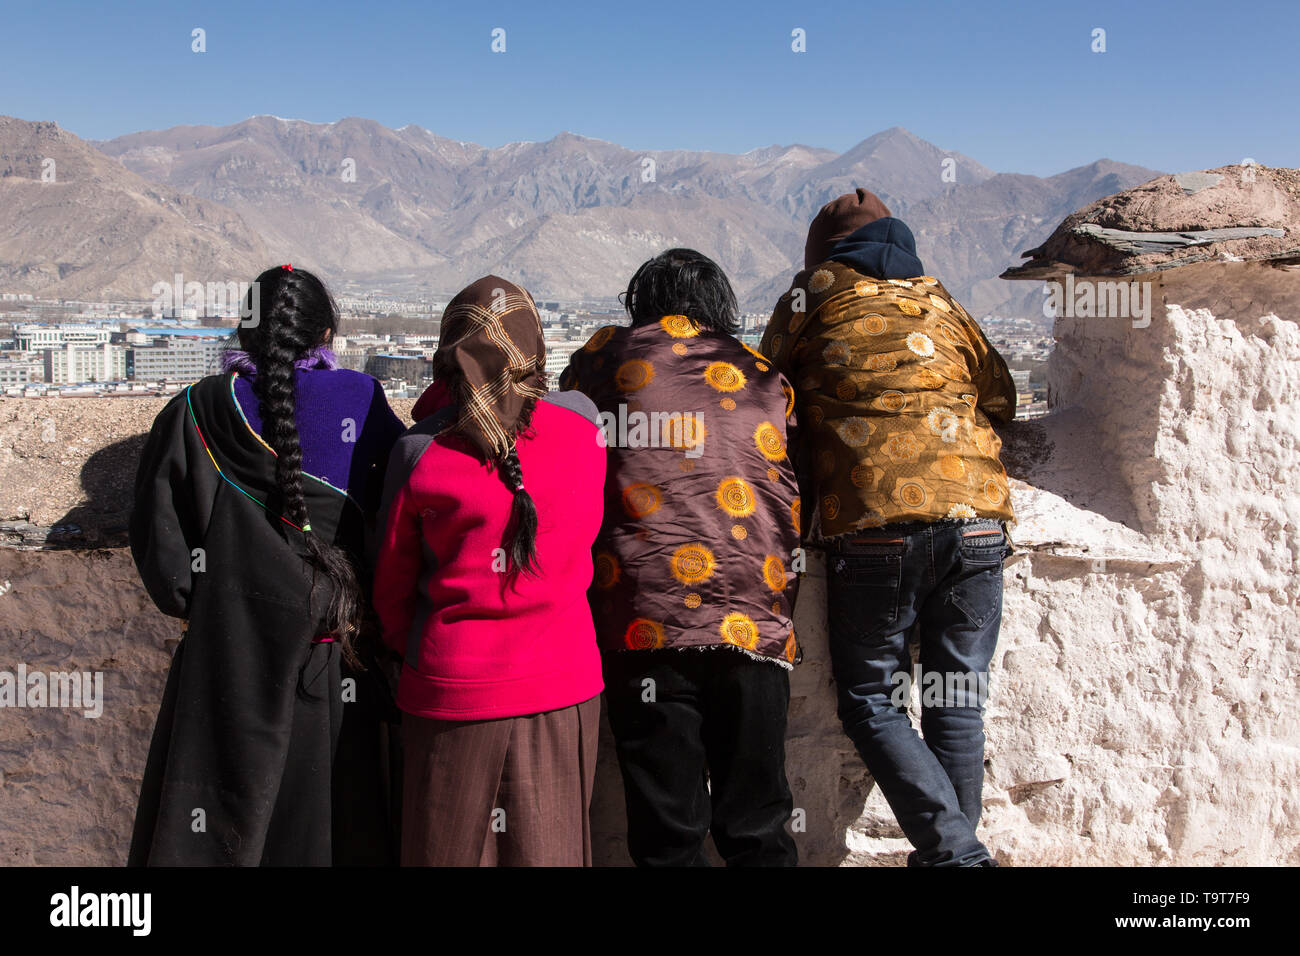 Une famille de pèlerins tibétains visiter le palais du Potala s'ouvrent sur la ville de Lhassa, au Tibet. Banque D'Images